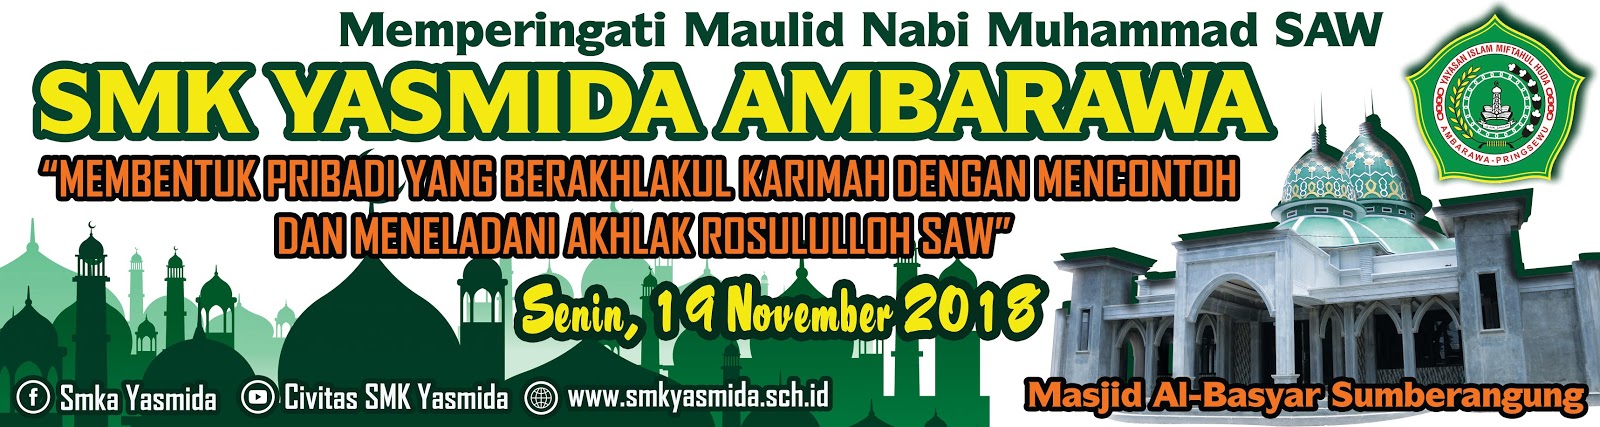  Desain Banner Maulid  Nabi Muhammad SMK Yasmida Abdur Rozak